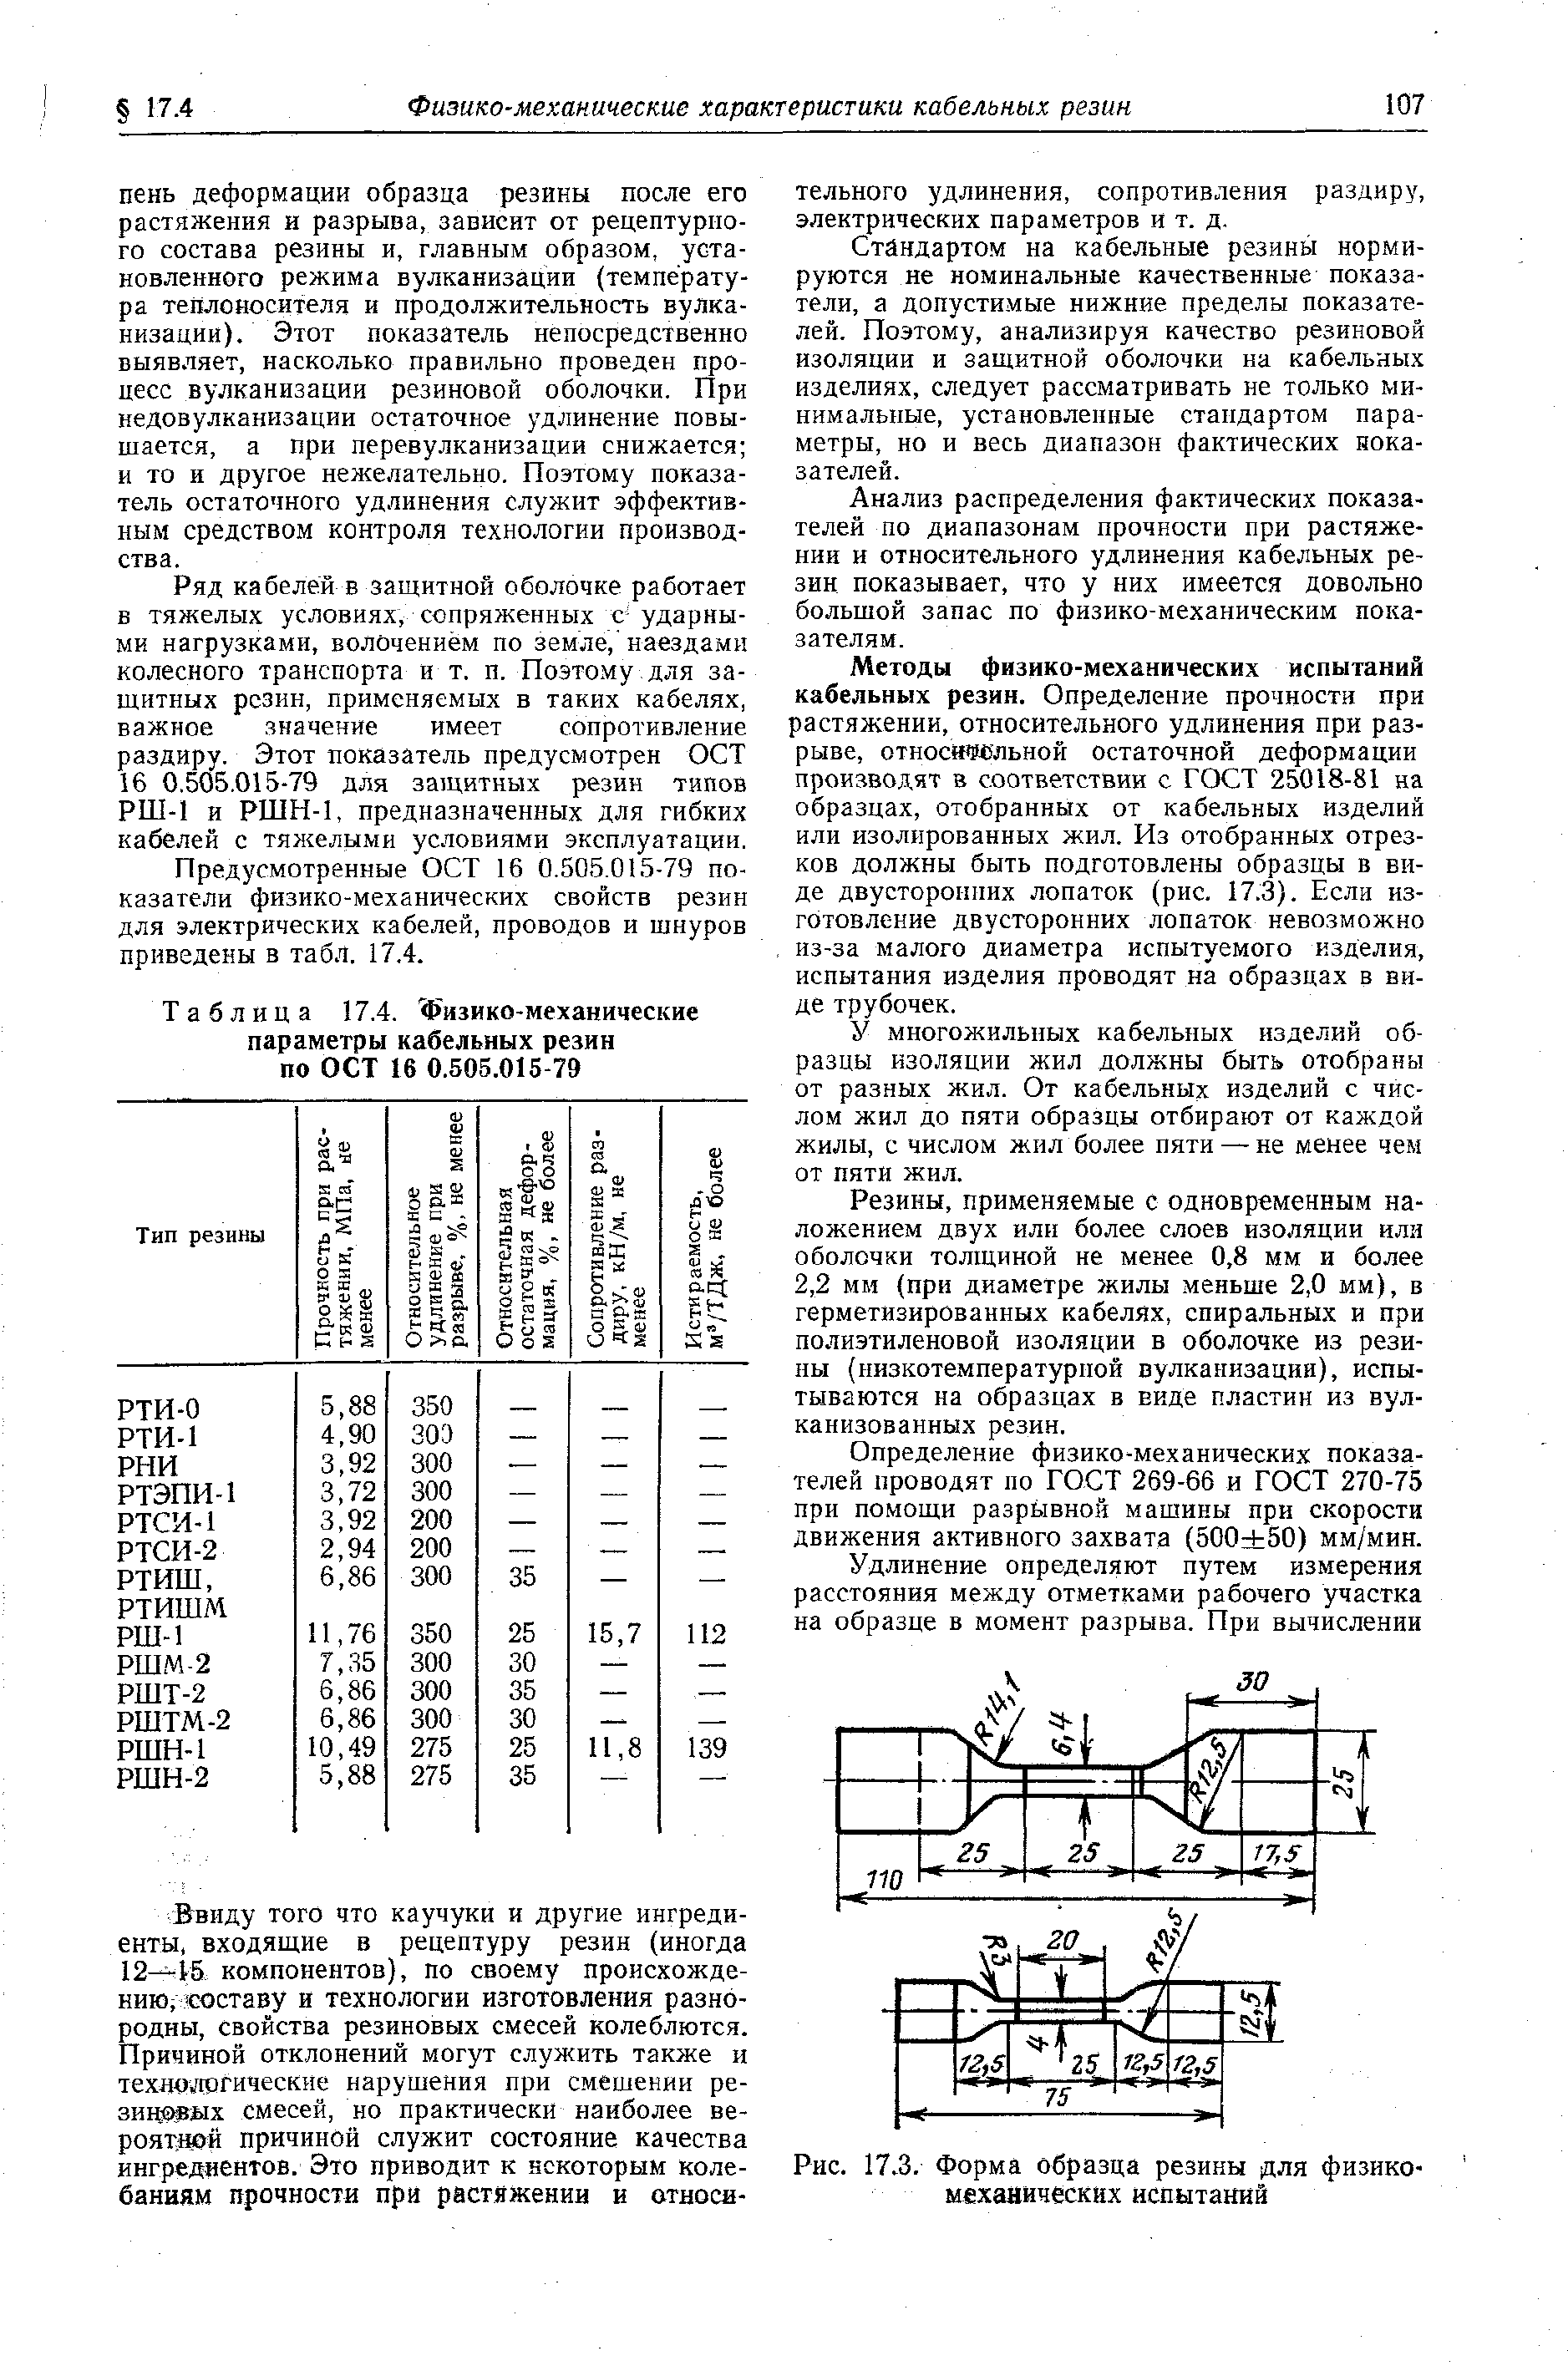 Таблица 17.4. Физико-механические параметры кабельных резин по ОСТ 16 0.505.015-79
